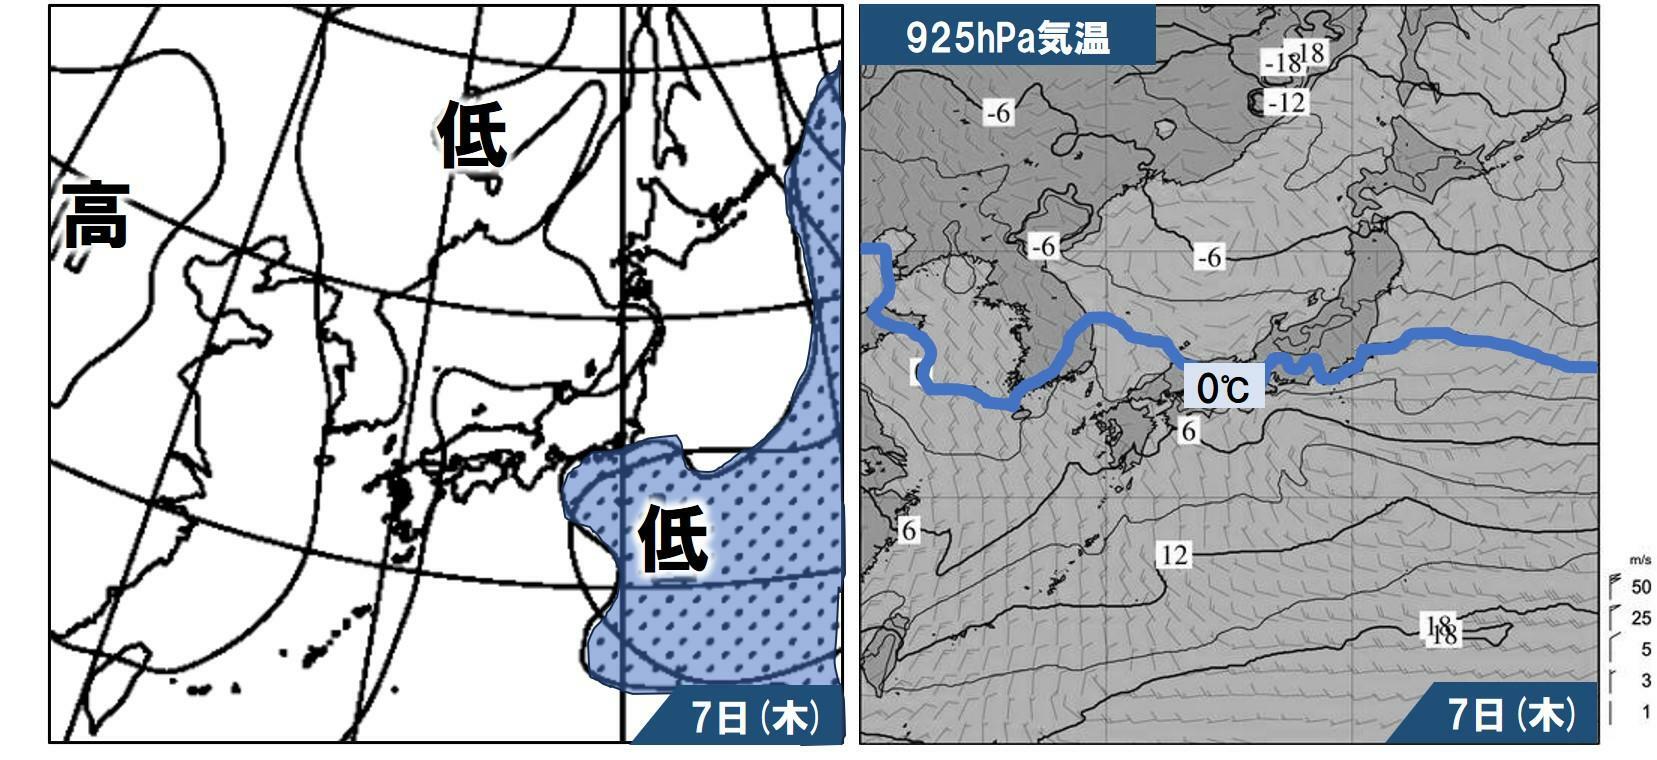 （左）3月7日21時の気圧配置と降水域の予想、（右）同21時の925hPaの気温の予想。左図で水色の部分は雨または雪が降る範囲、右図で青線より北が雪になる可能性のある範囲。